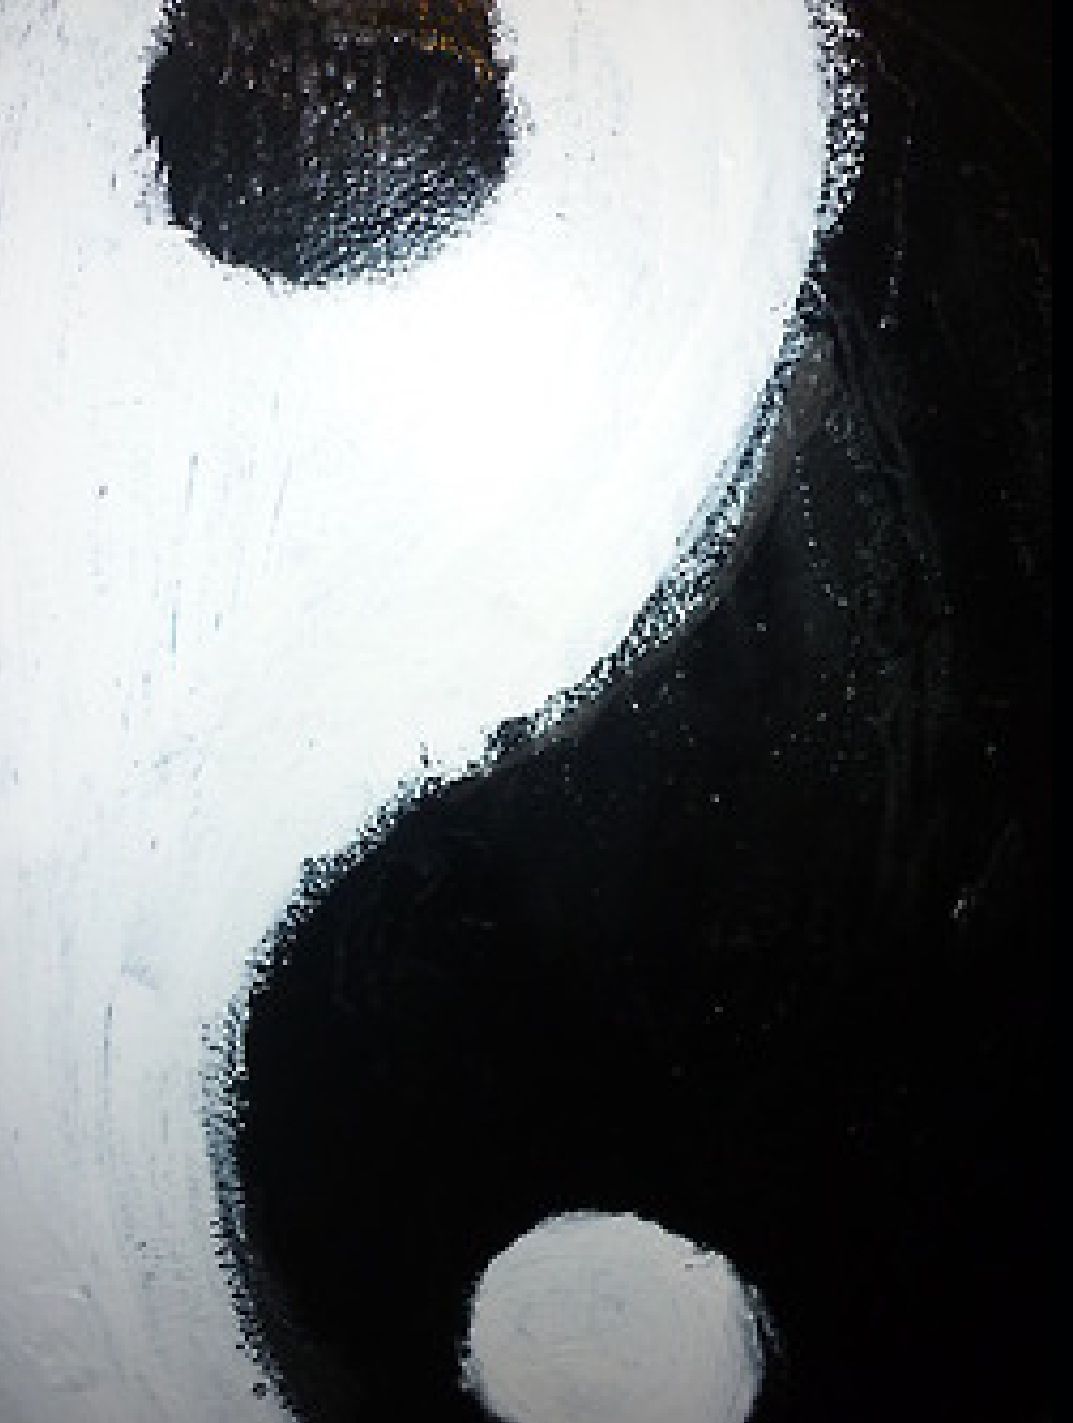 yin yang iphone wallpaper,schwarz,auge,kreis,schwarz und weiß,wimper